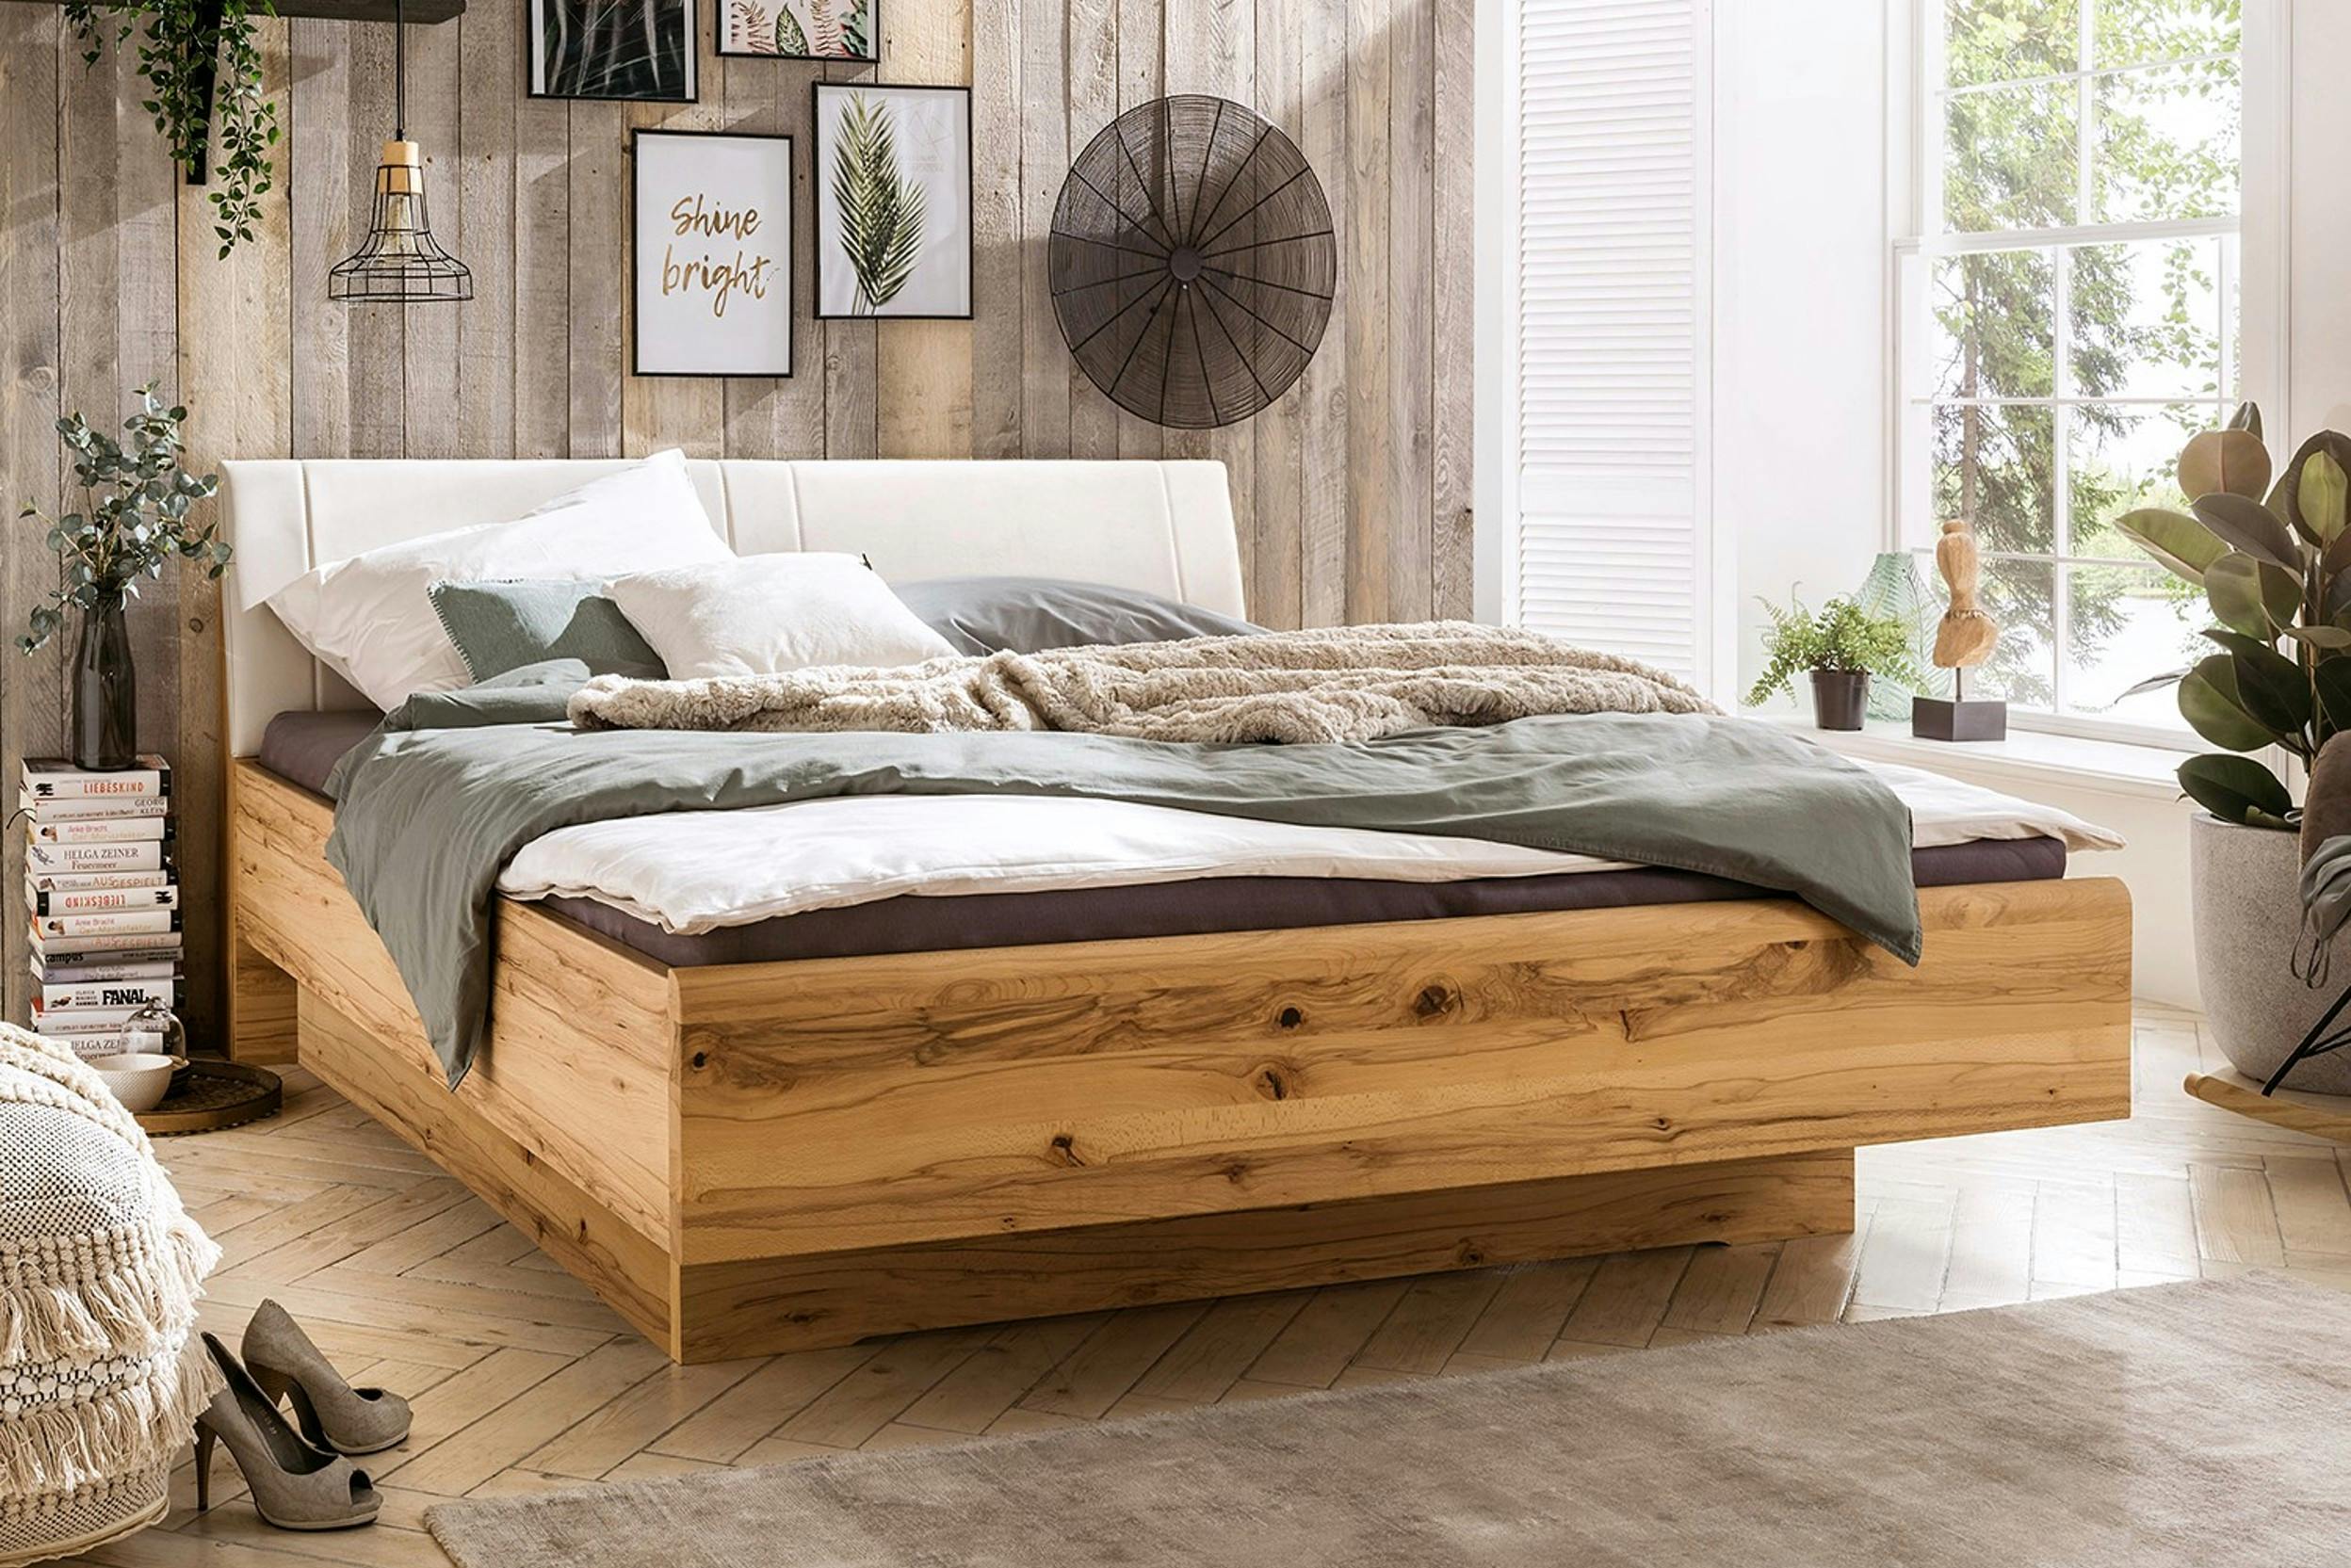 Geräumiges Holzbett vor einer Wand mit Holzpaneelen